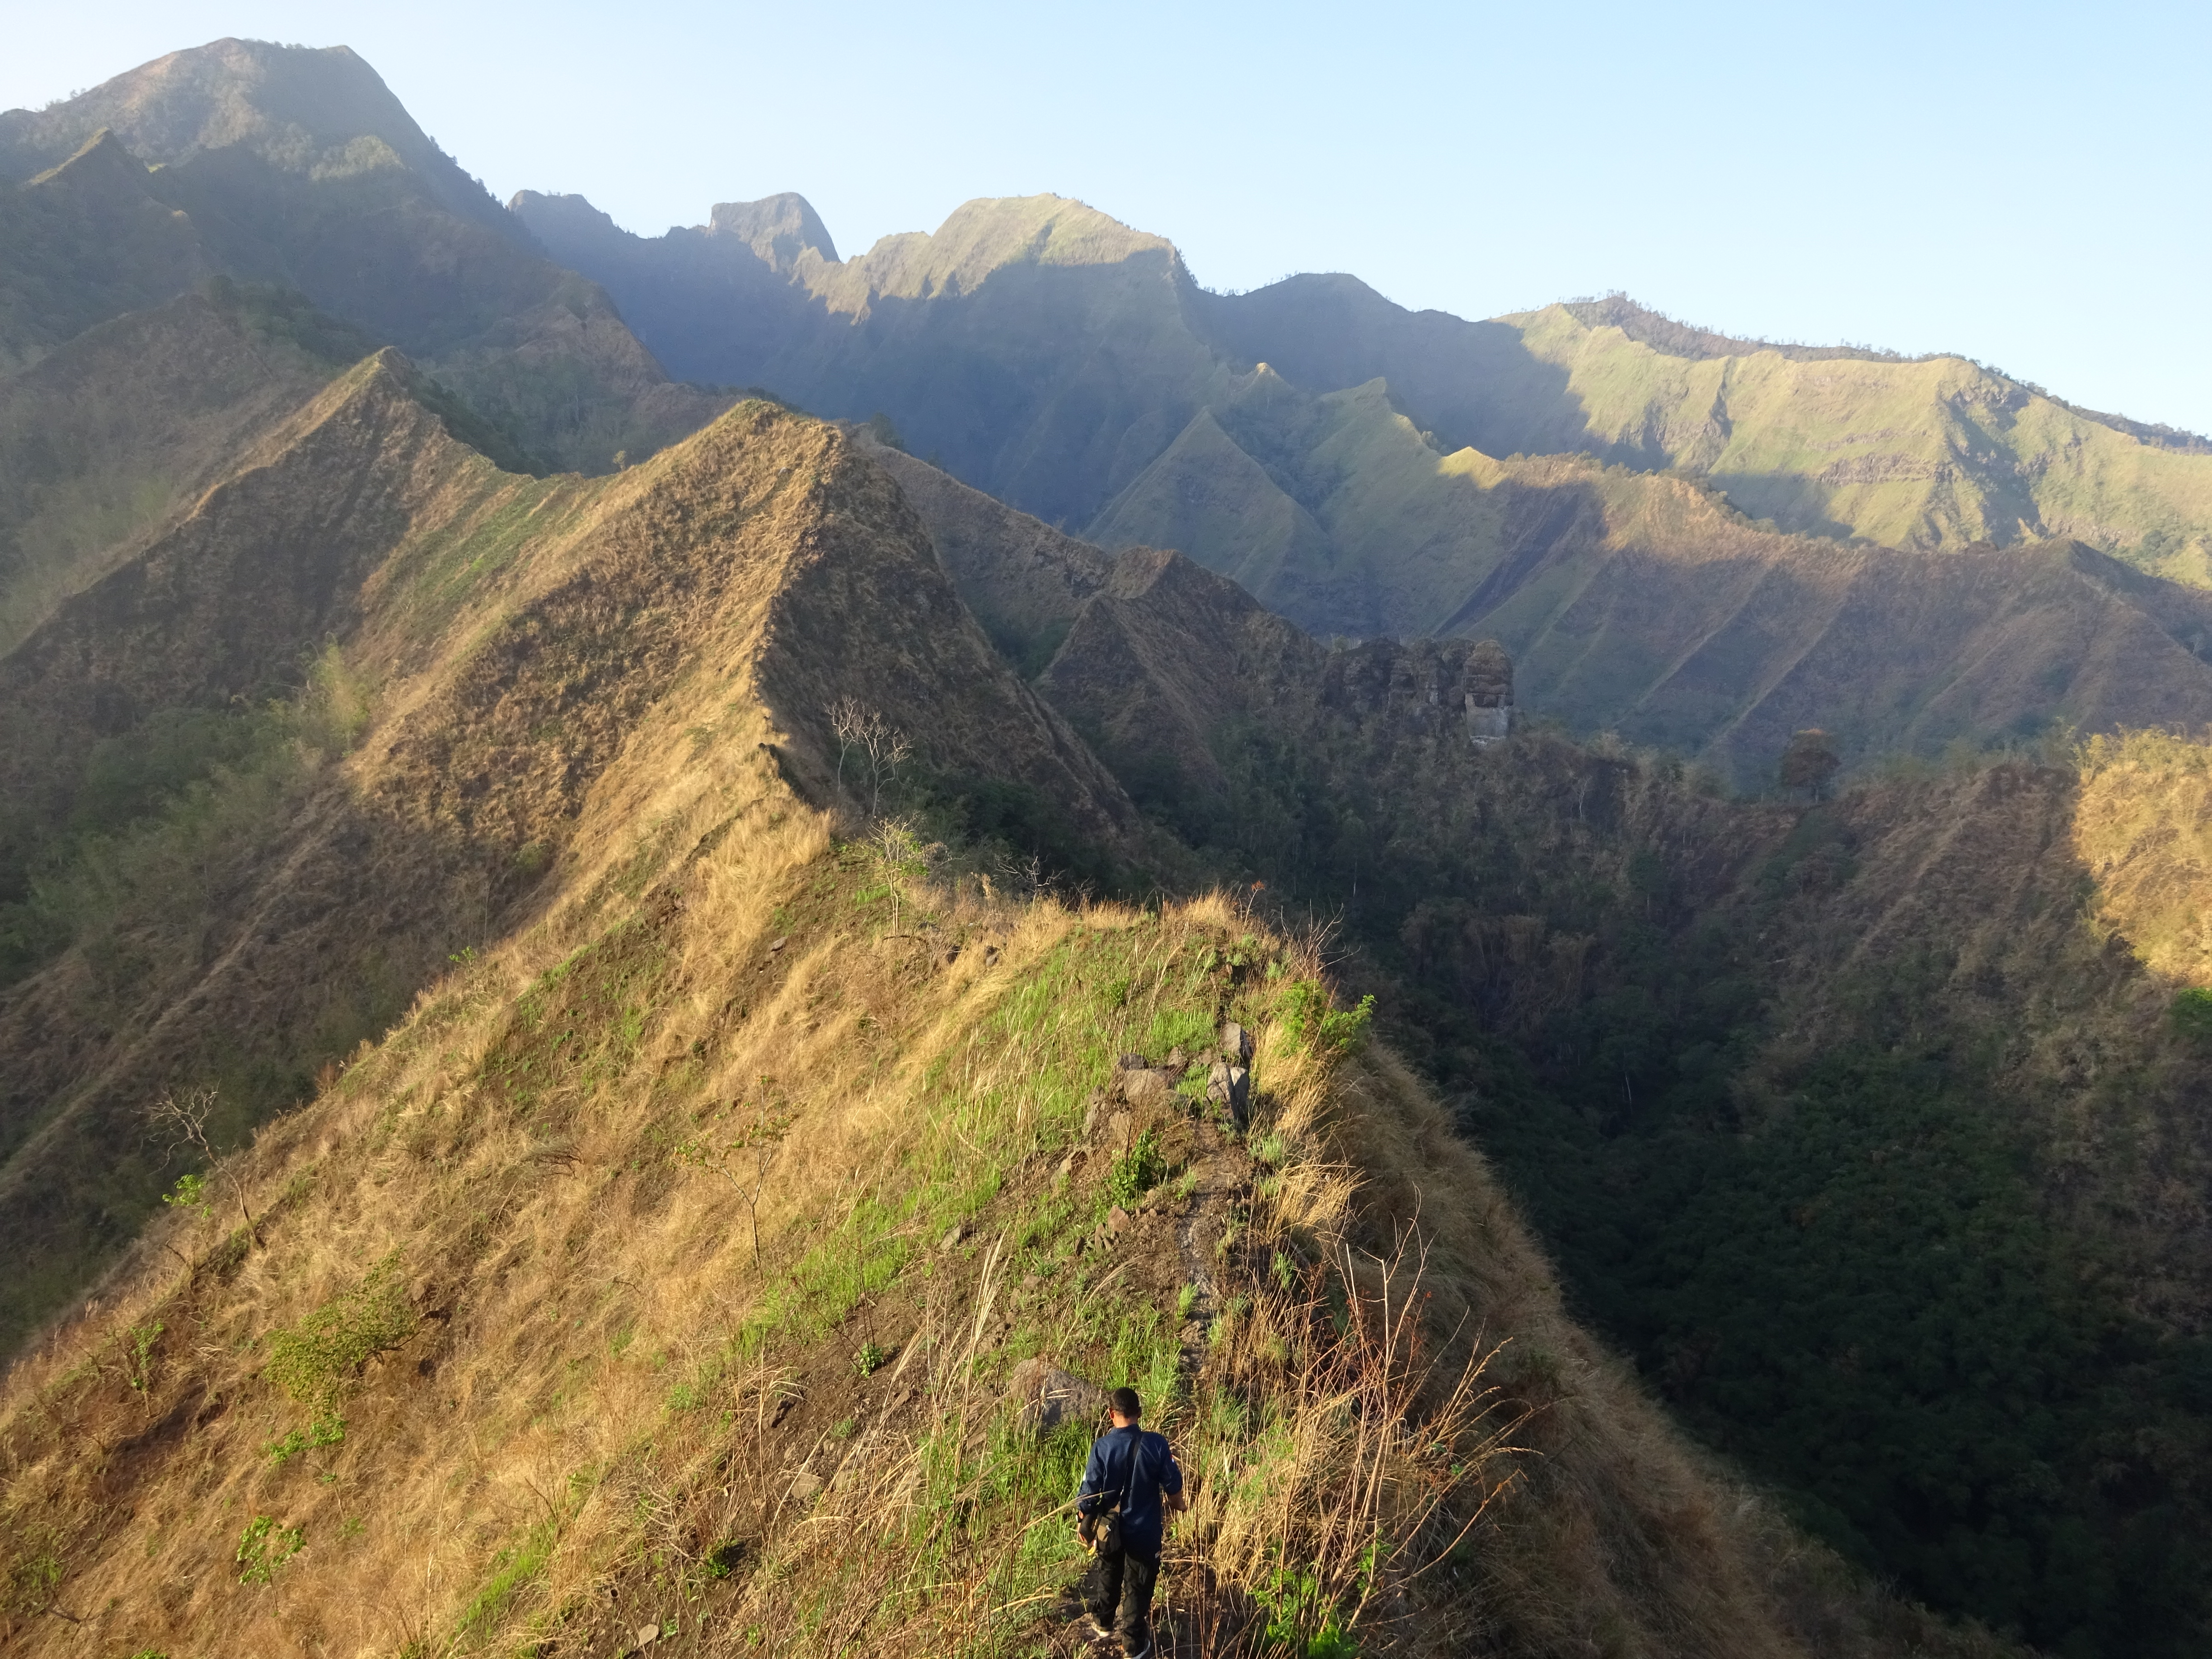 Anjasmoro - View from the Bukit Semar ridge (Dan Quinn, November 2019)